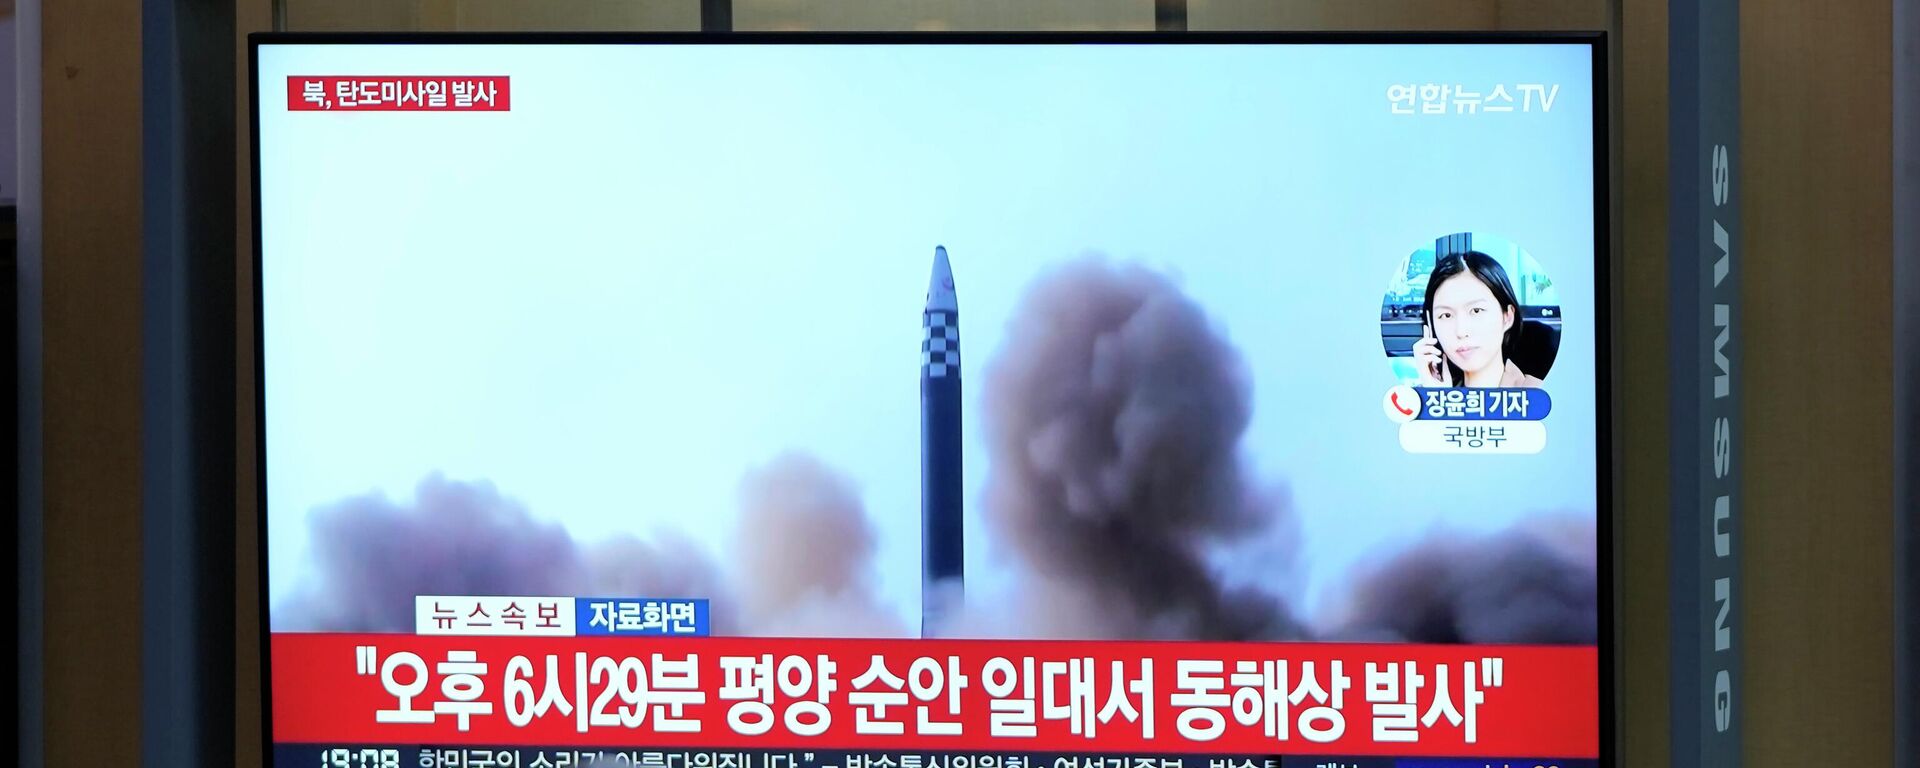 El lanzamiento de prueba de misil en Corea del Norte - Sputnik Mundo, 1920, 23.08.2023